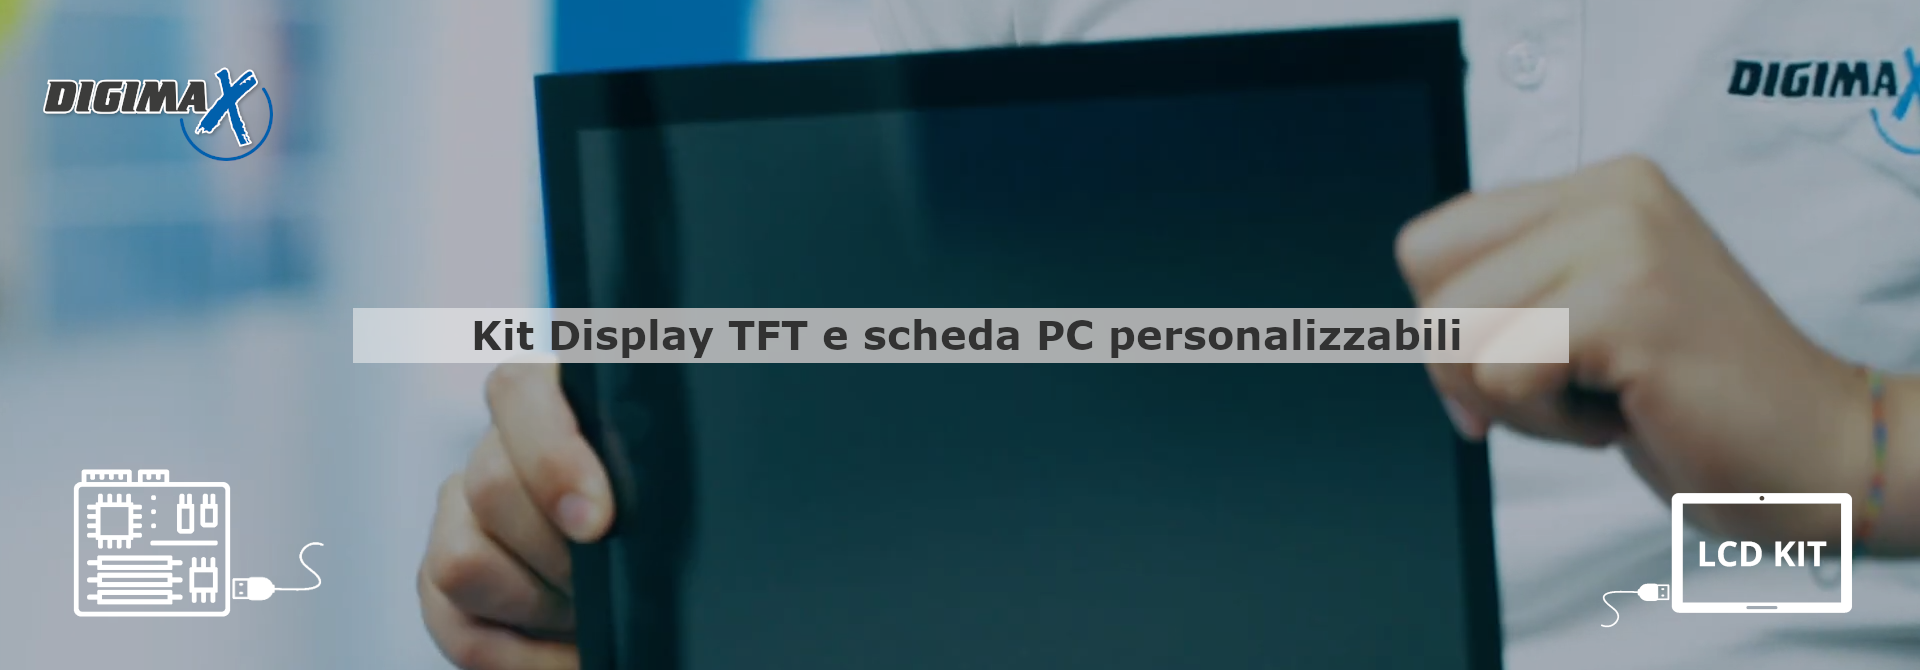 Kit LCF TFT personalizzabile composto da scheda PC e display touch